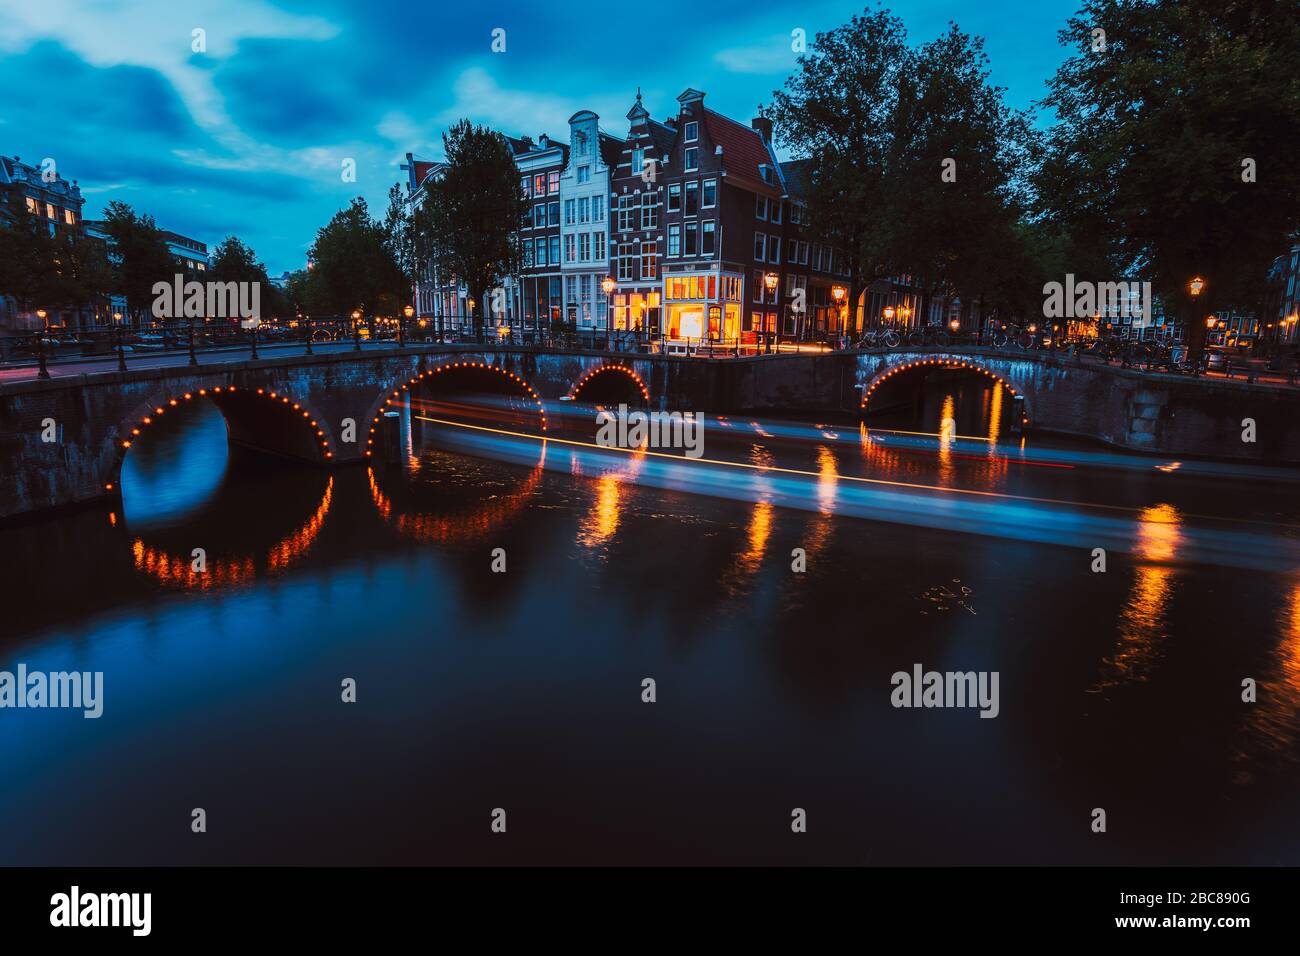 L'éclairage du pont et les sentiers légers du bateau en soirée Amsterdam avec réflexion sur le canal Herengracht. Maisons typiquement hollandaises à la lumière du crépuscule, Hollande, Neth Banque D'Images